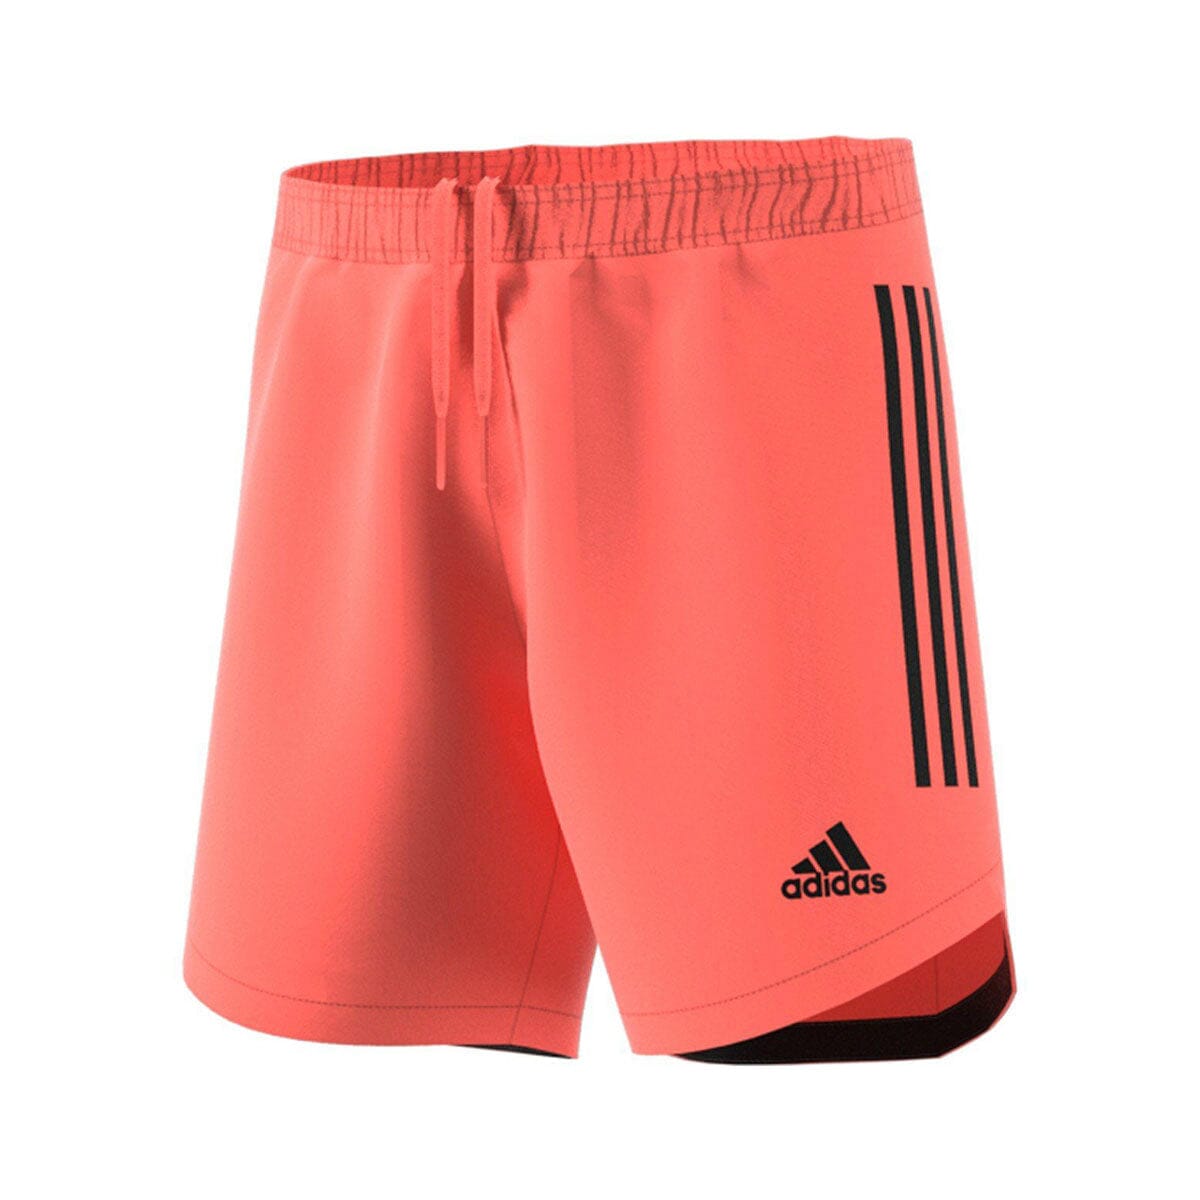 adidas Men's Condivo 20 Short Shorts Adidas Adult Small signal coral/black 